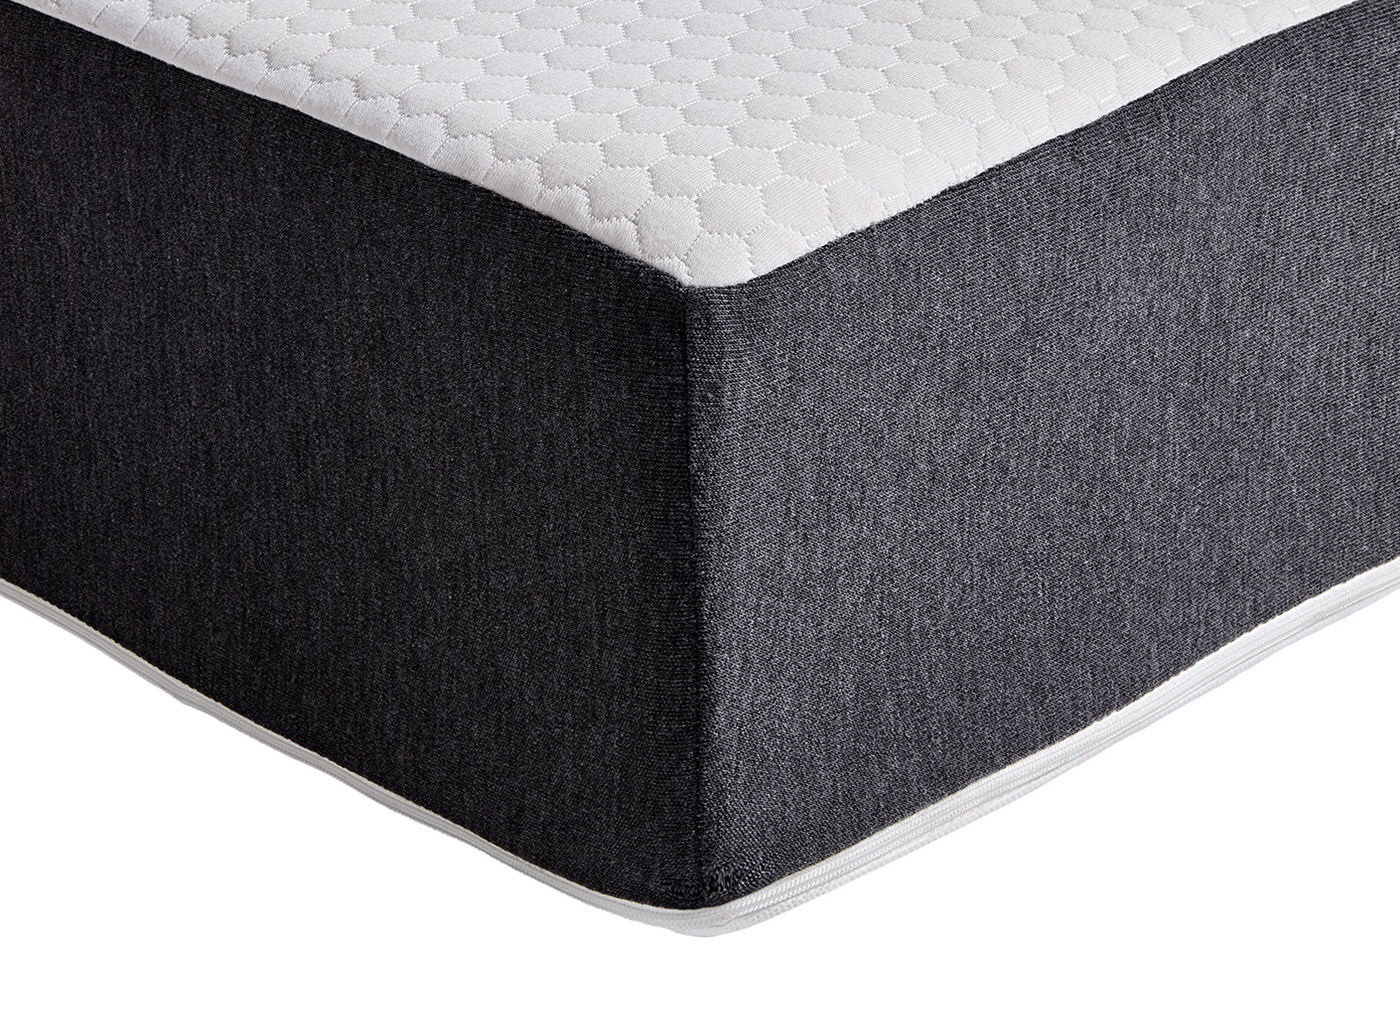 doze luxe pocket sprung mattress review